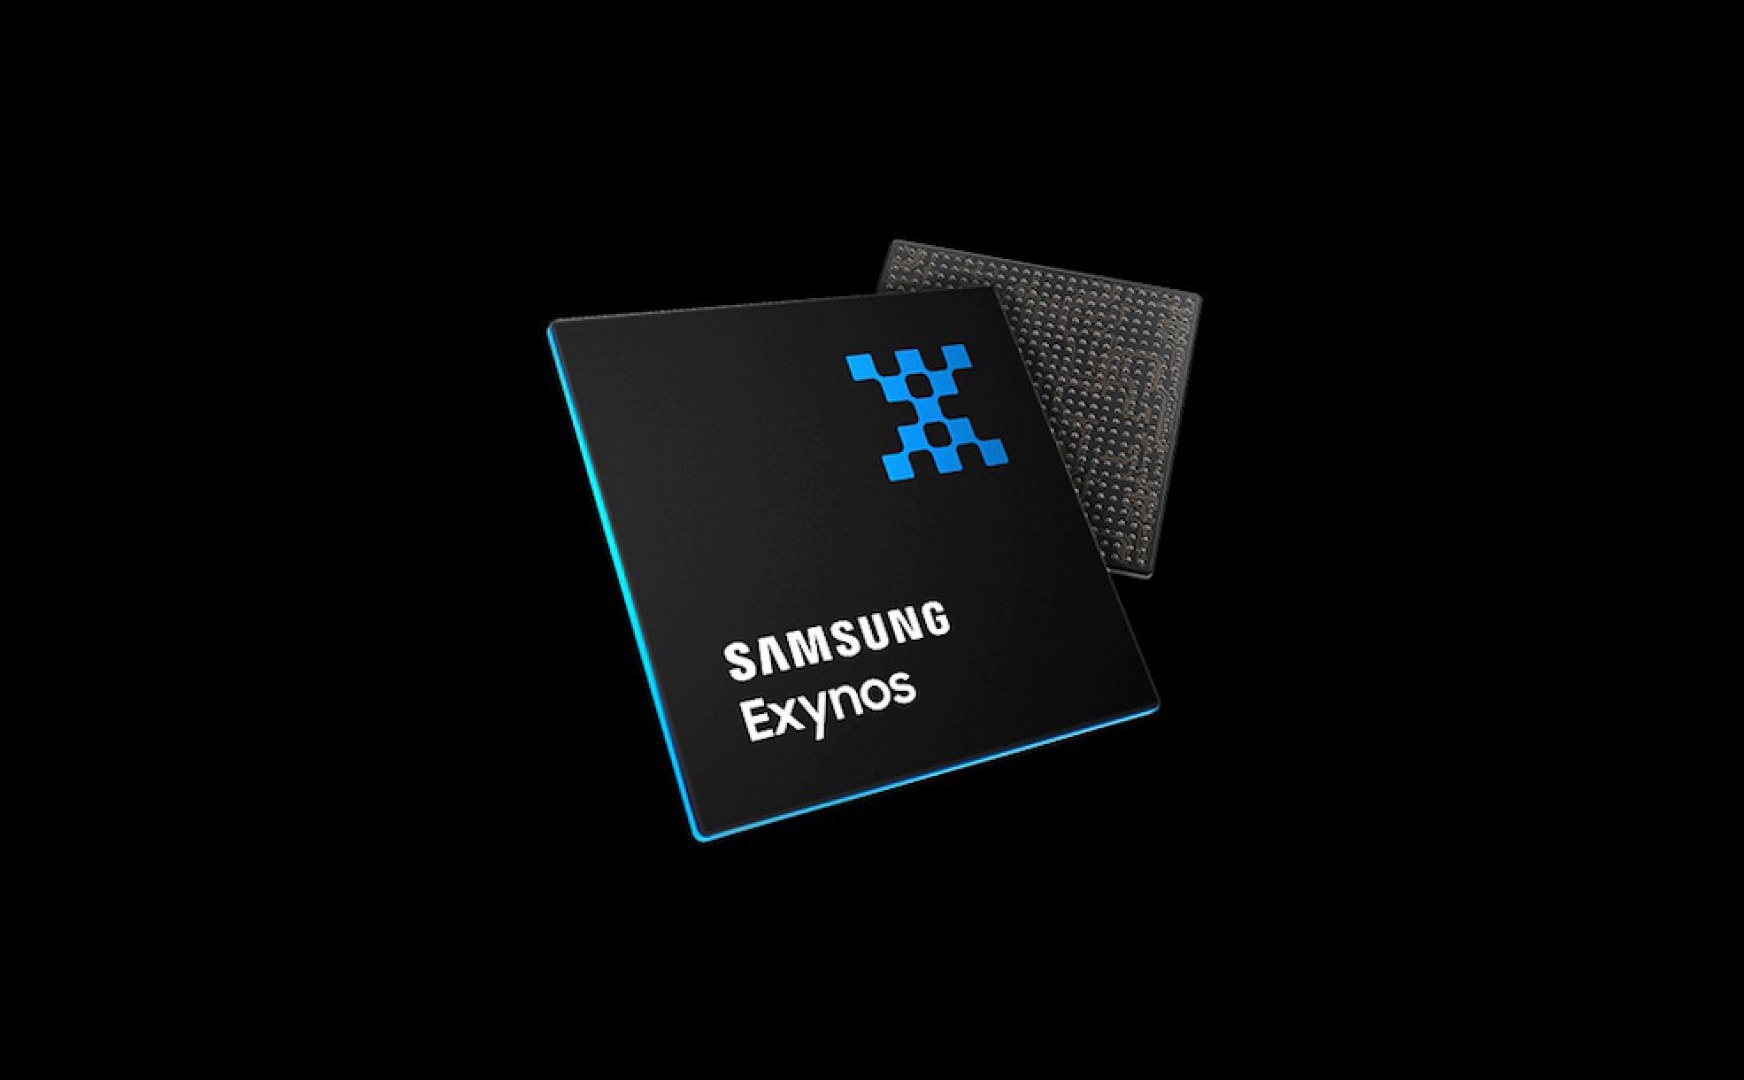 Samsung thành lập nhóm phát triển chipset riêng, phục hưng Samsung Exynos?